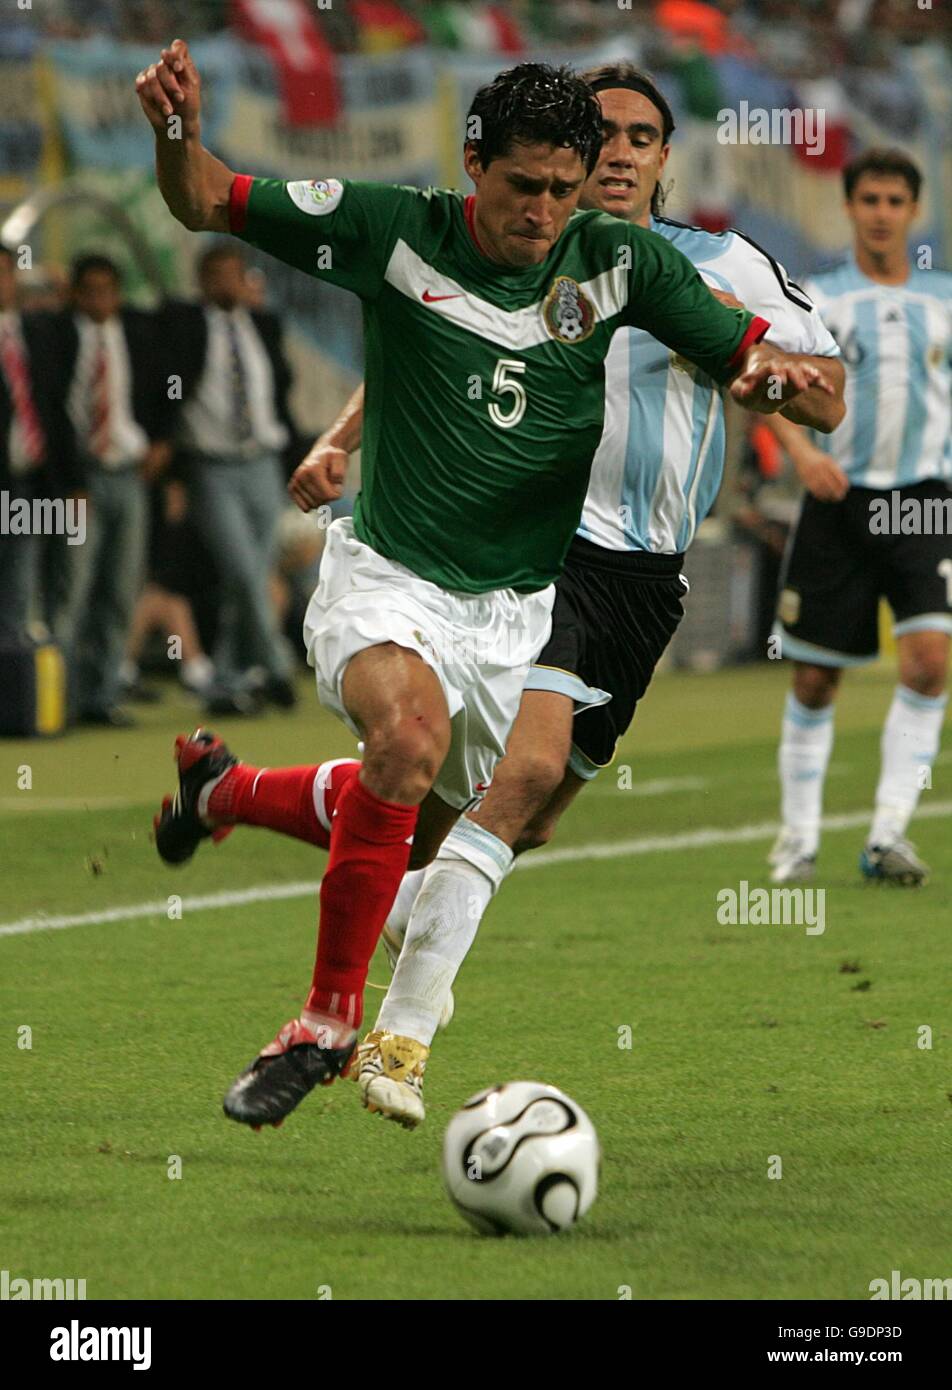 Calcio - Coppa del mondo FIFA 2006 Germania - secondo turno - Argentina contro Messico - Zentralstadion. Ricardo Osorio, Messico Foto Stock